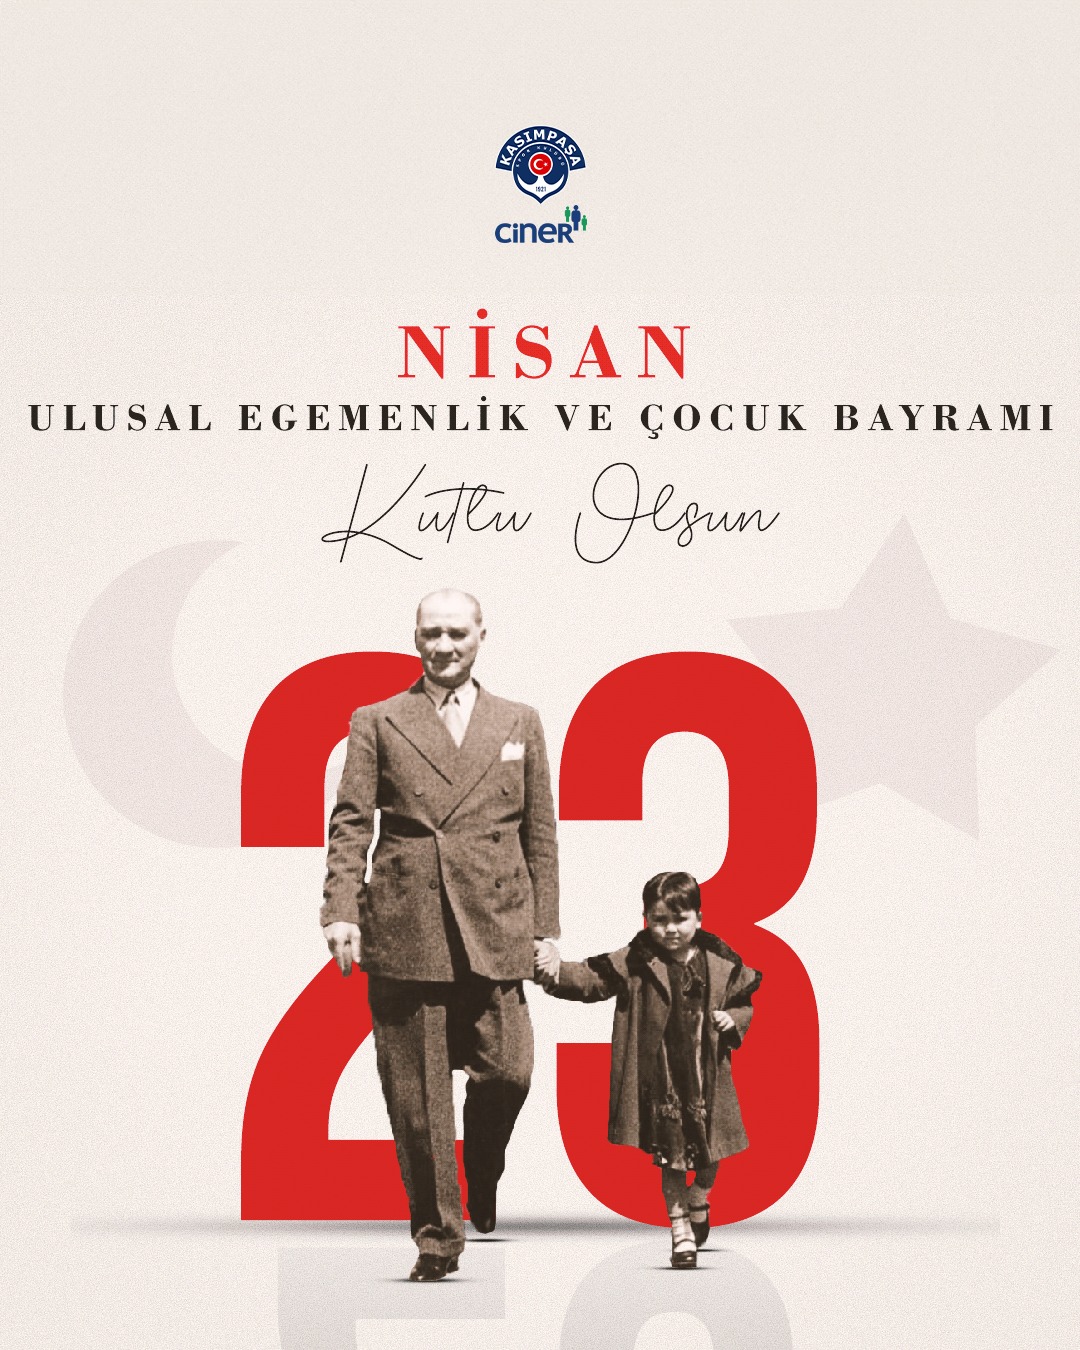 Mustafa Kemal Atatürk'ün Armağan Ettiği 23 Nisan Ulusal Egemenlik ve Çocuk Bayramı